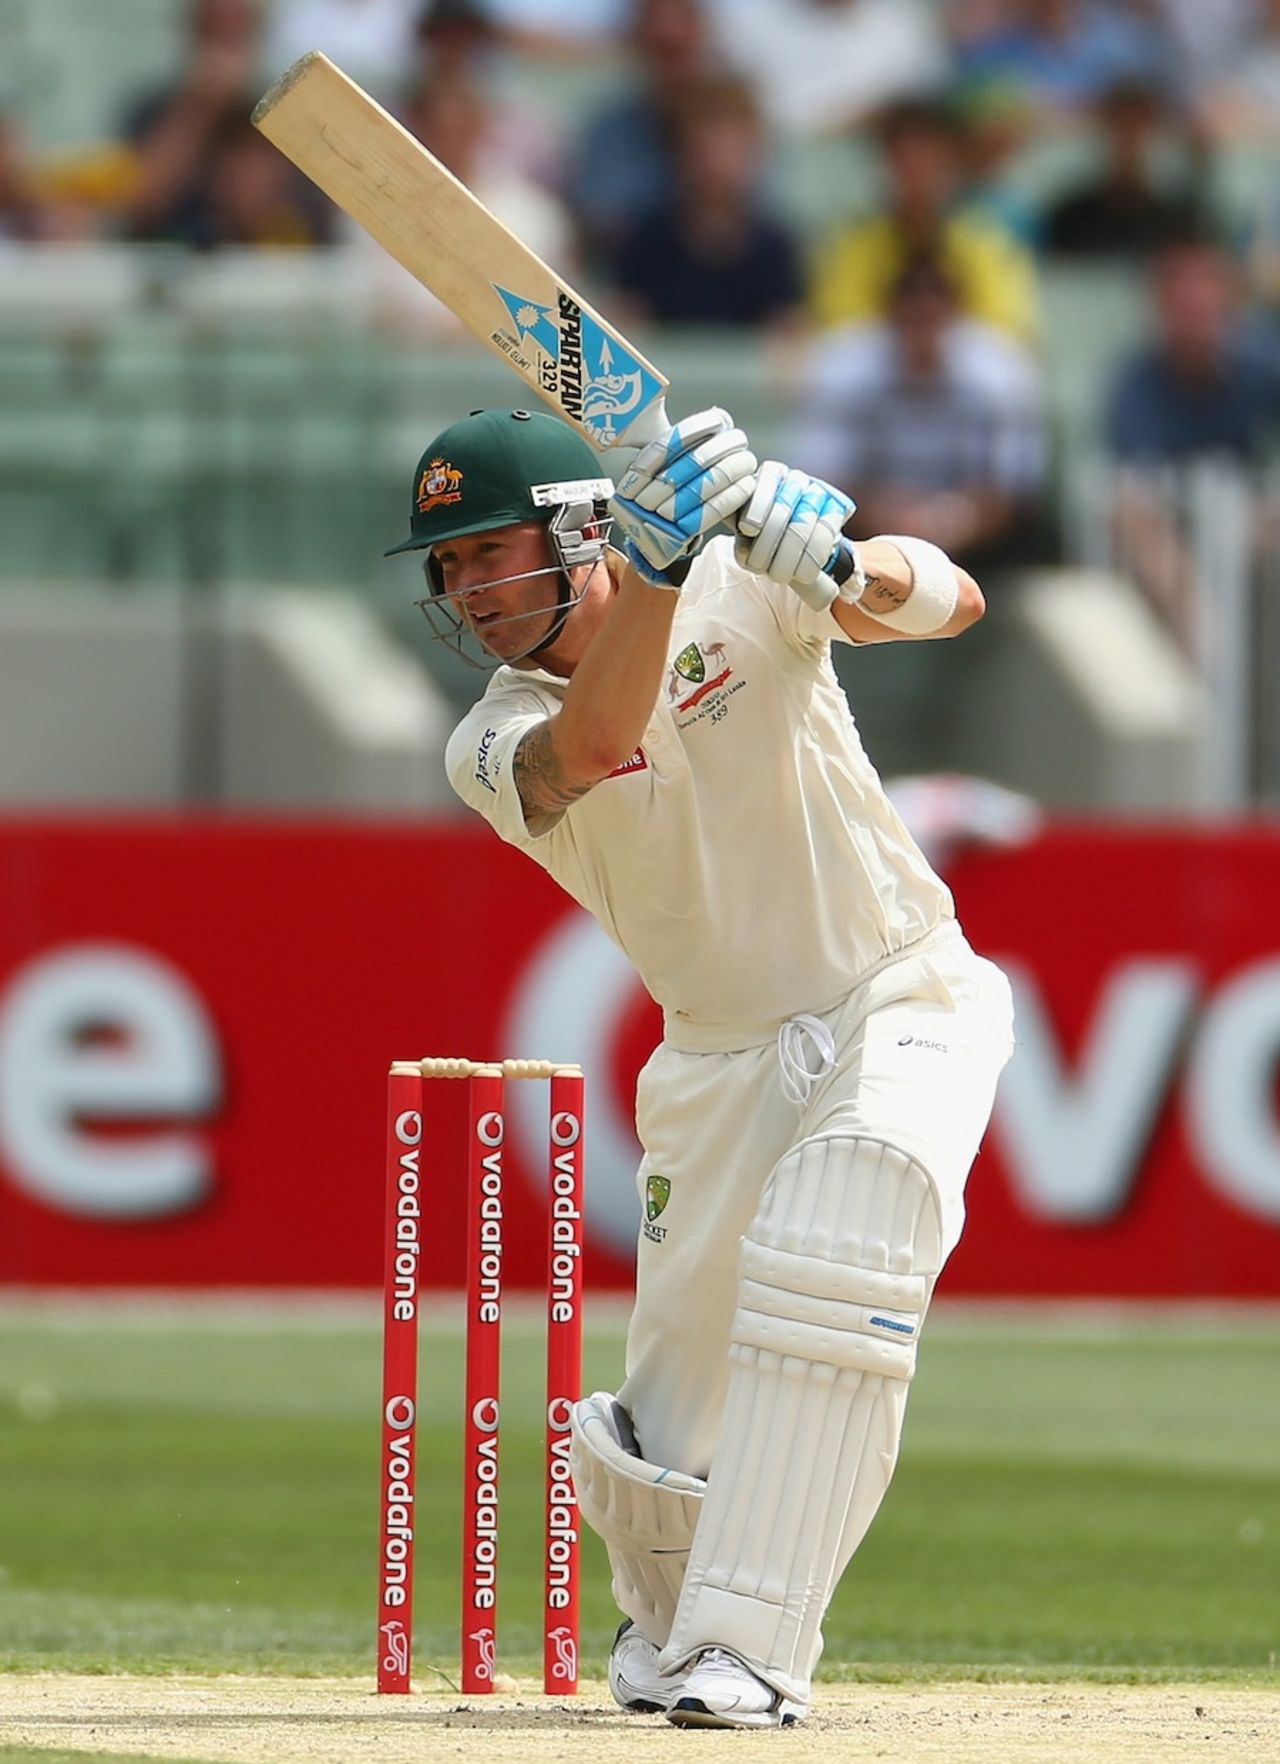 Michael Clarke drives, Australia v Sri Lanka, 2nd Test, day two, Melbourne, December 27, 2012